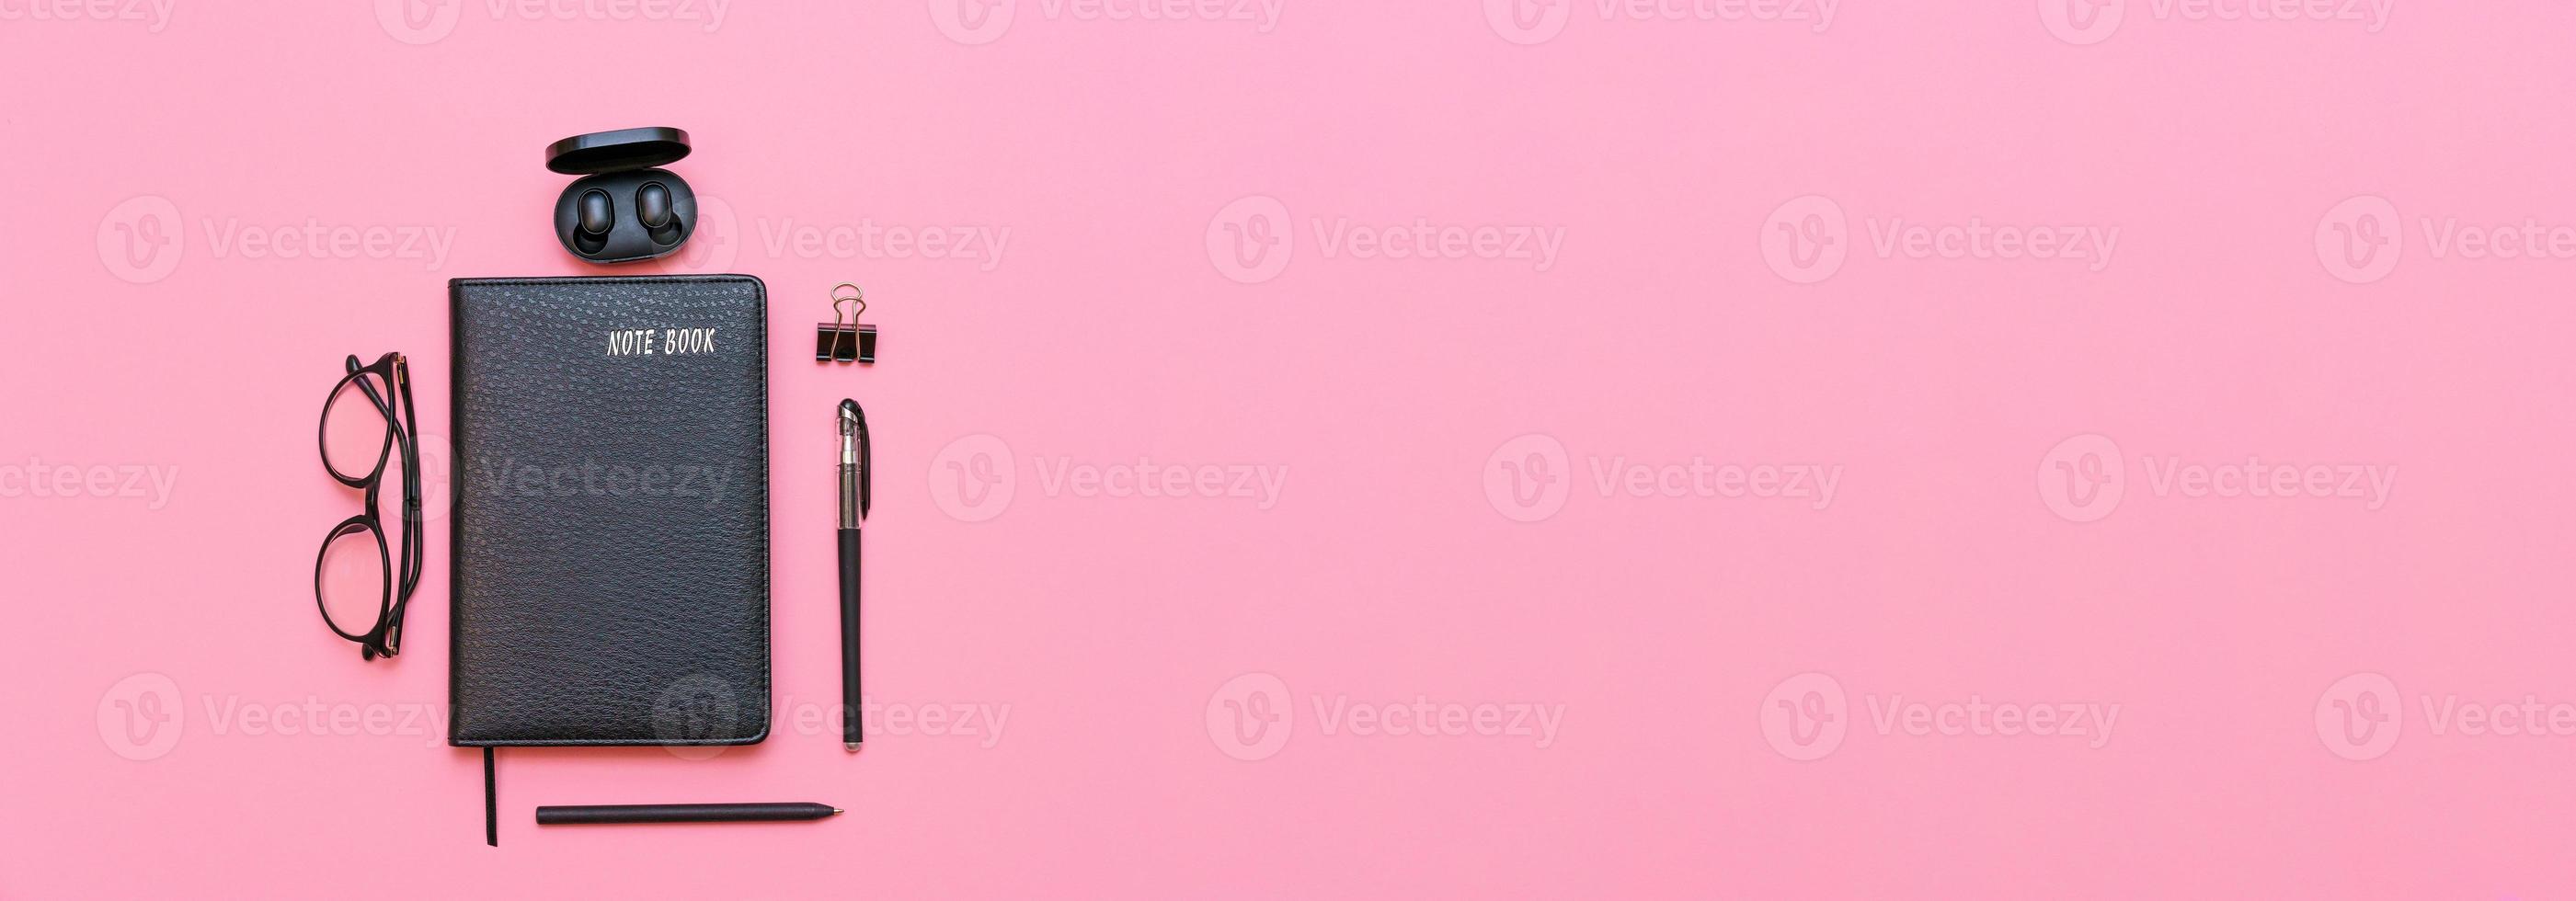 caderno preto com óculos e uma caneta, fones de ouvido sem fio em um fundo rosa. foto